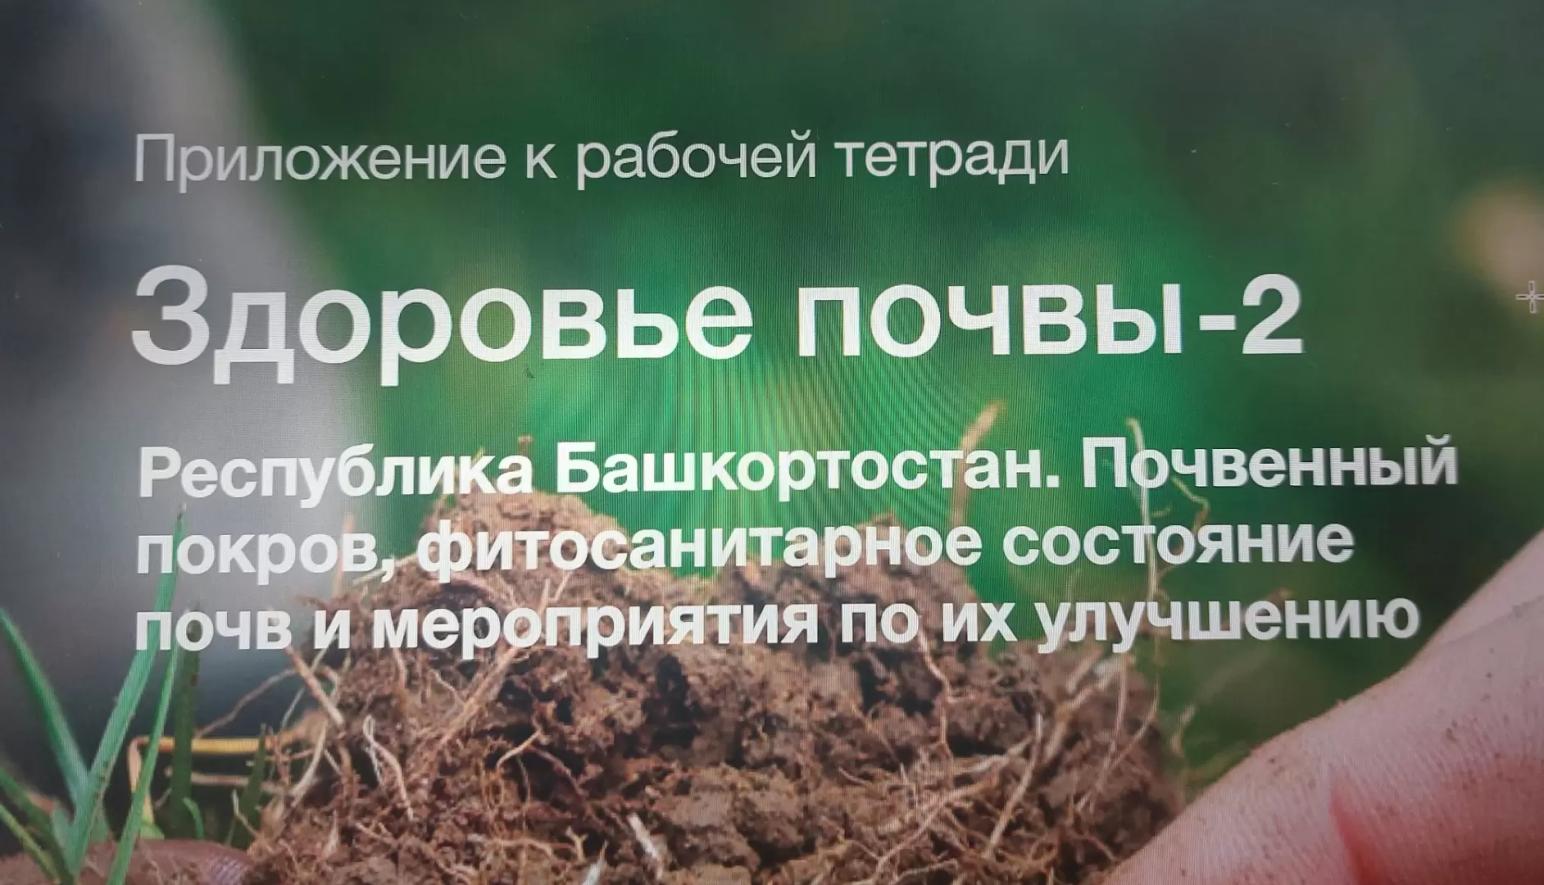 Республика Башкортостан. Здоровье почв и мероприятия по их улучшению